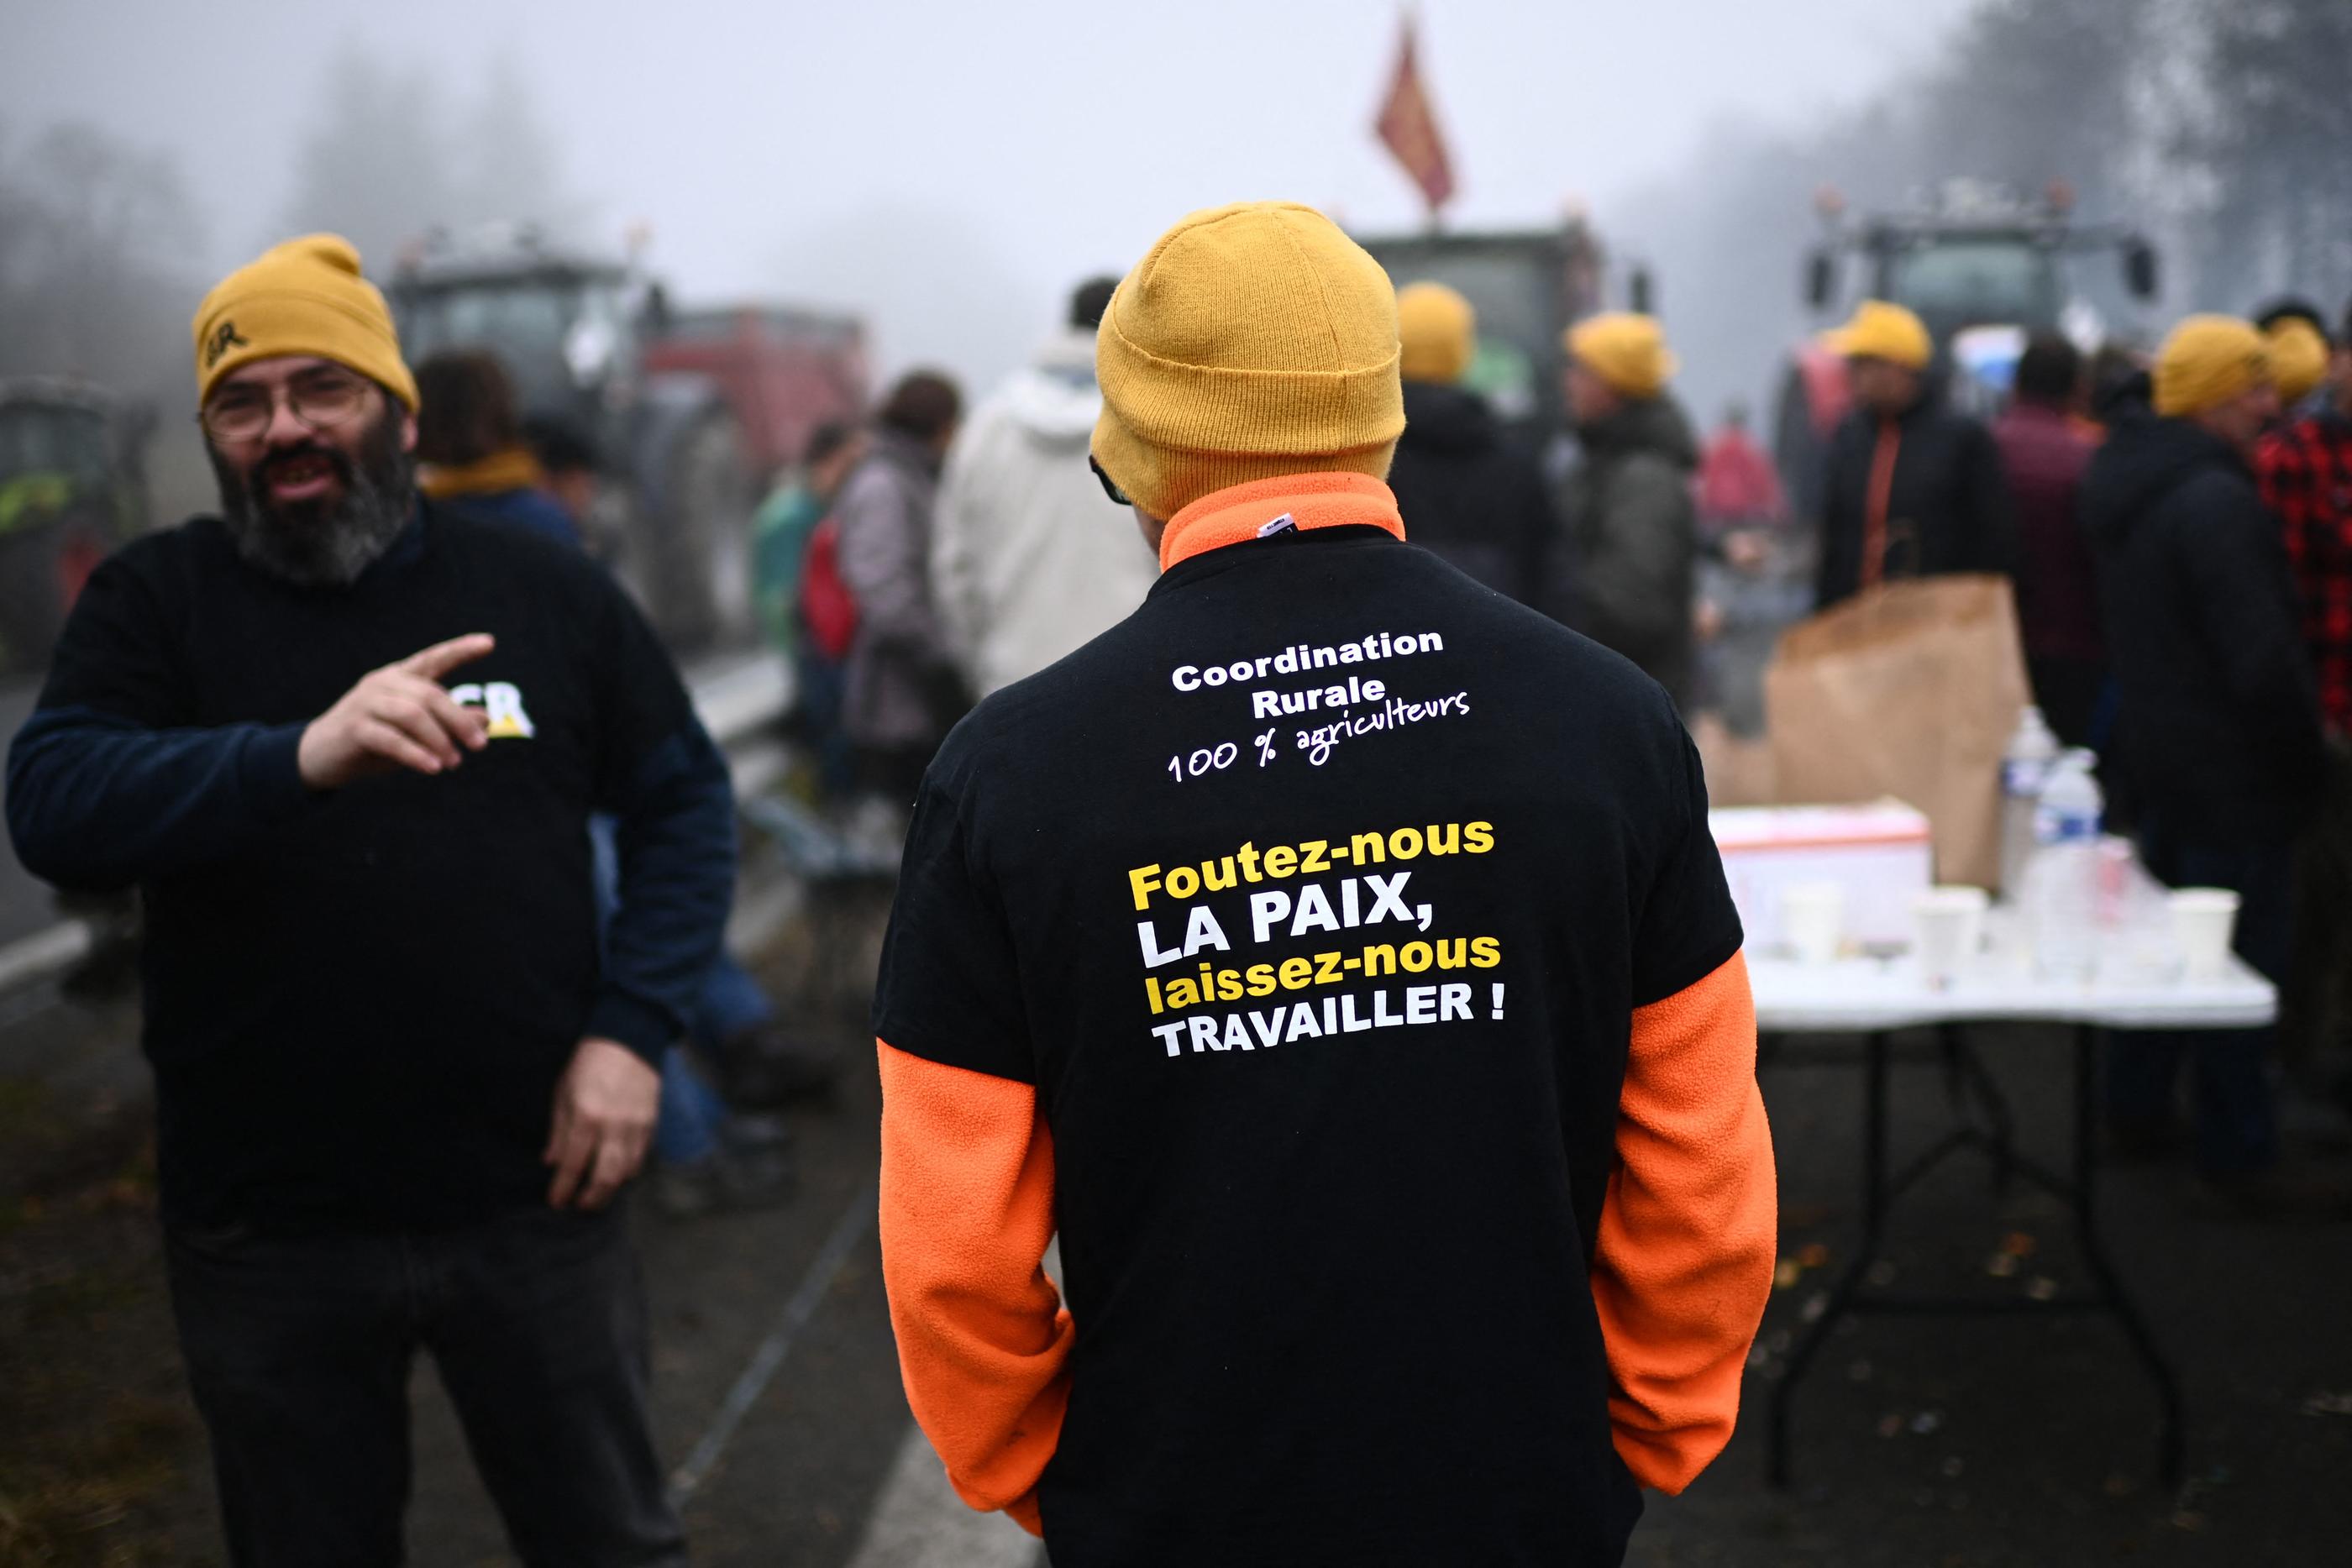 La Coordination rurale avait été l'un des fers de lance du mouvement de colère des agriculteurs de l'hiver dernier. AFP/Christophe Archambault